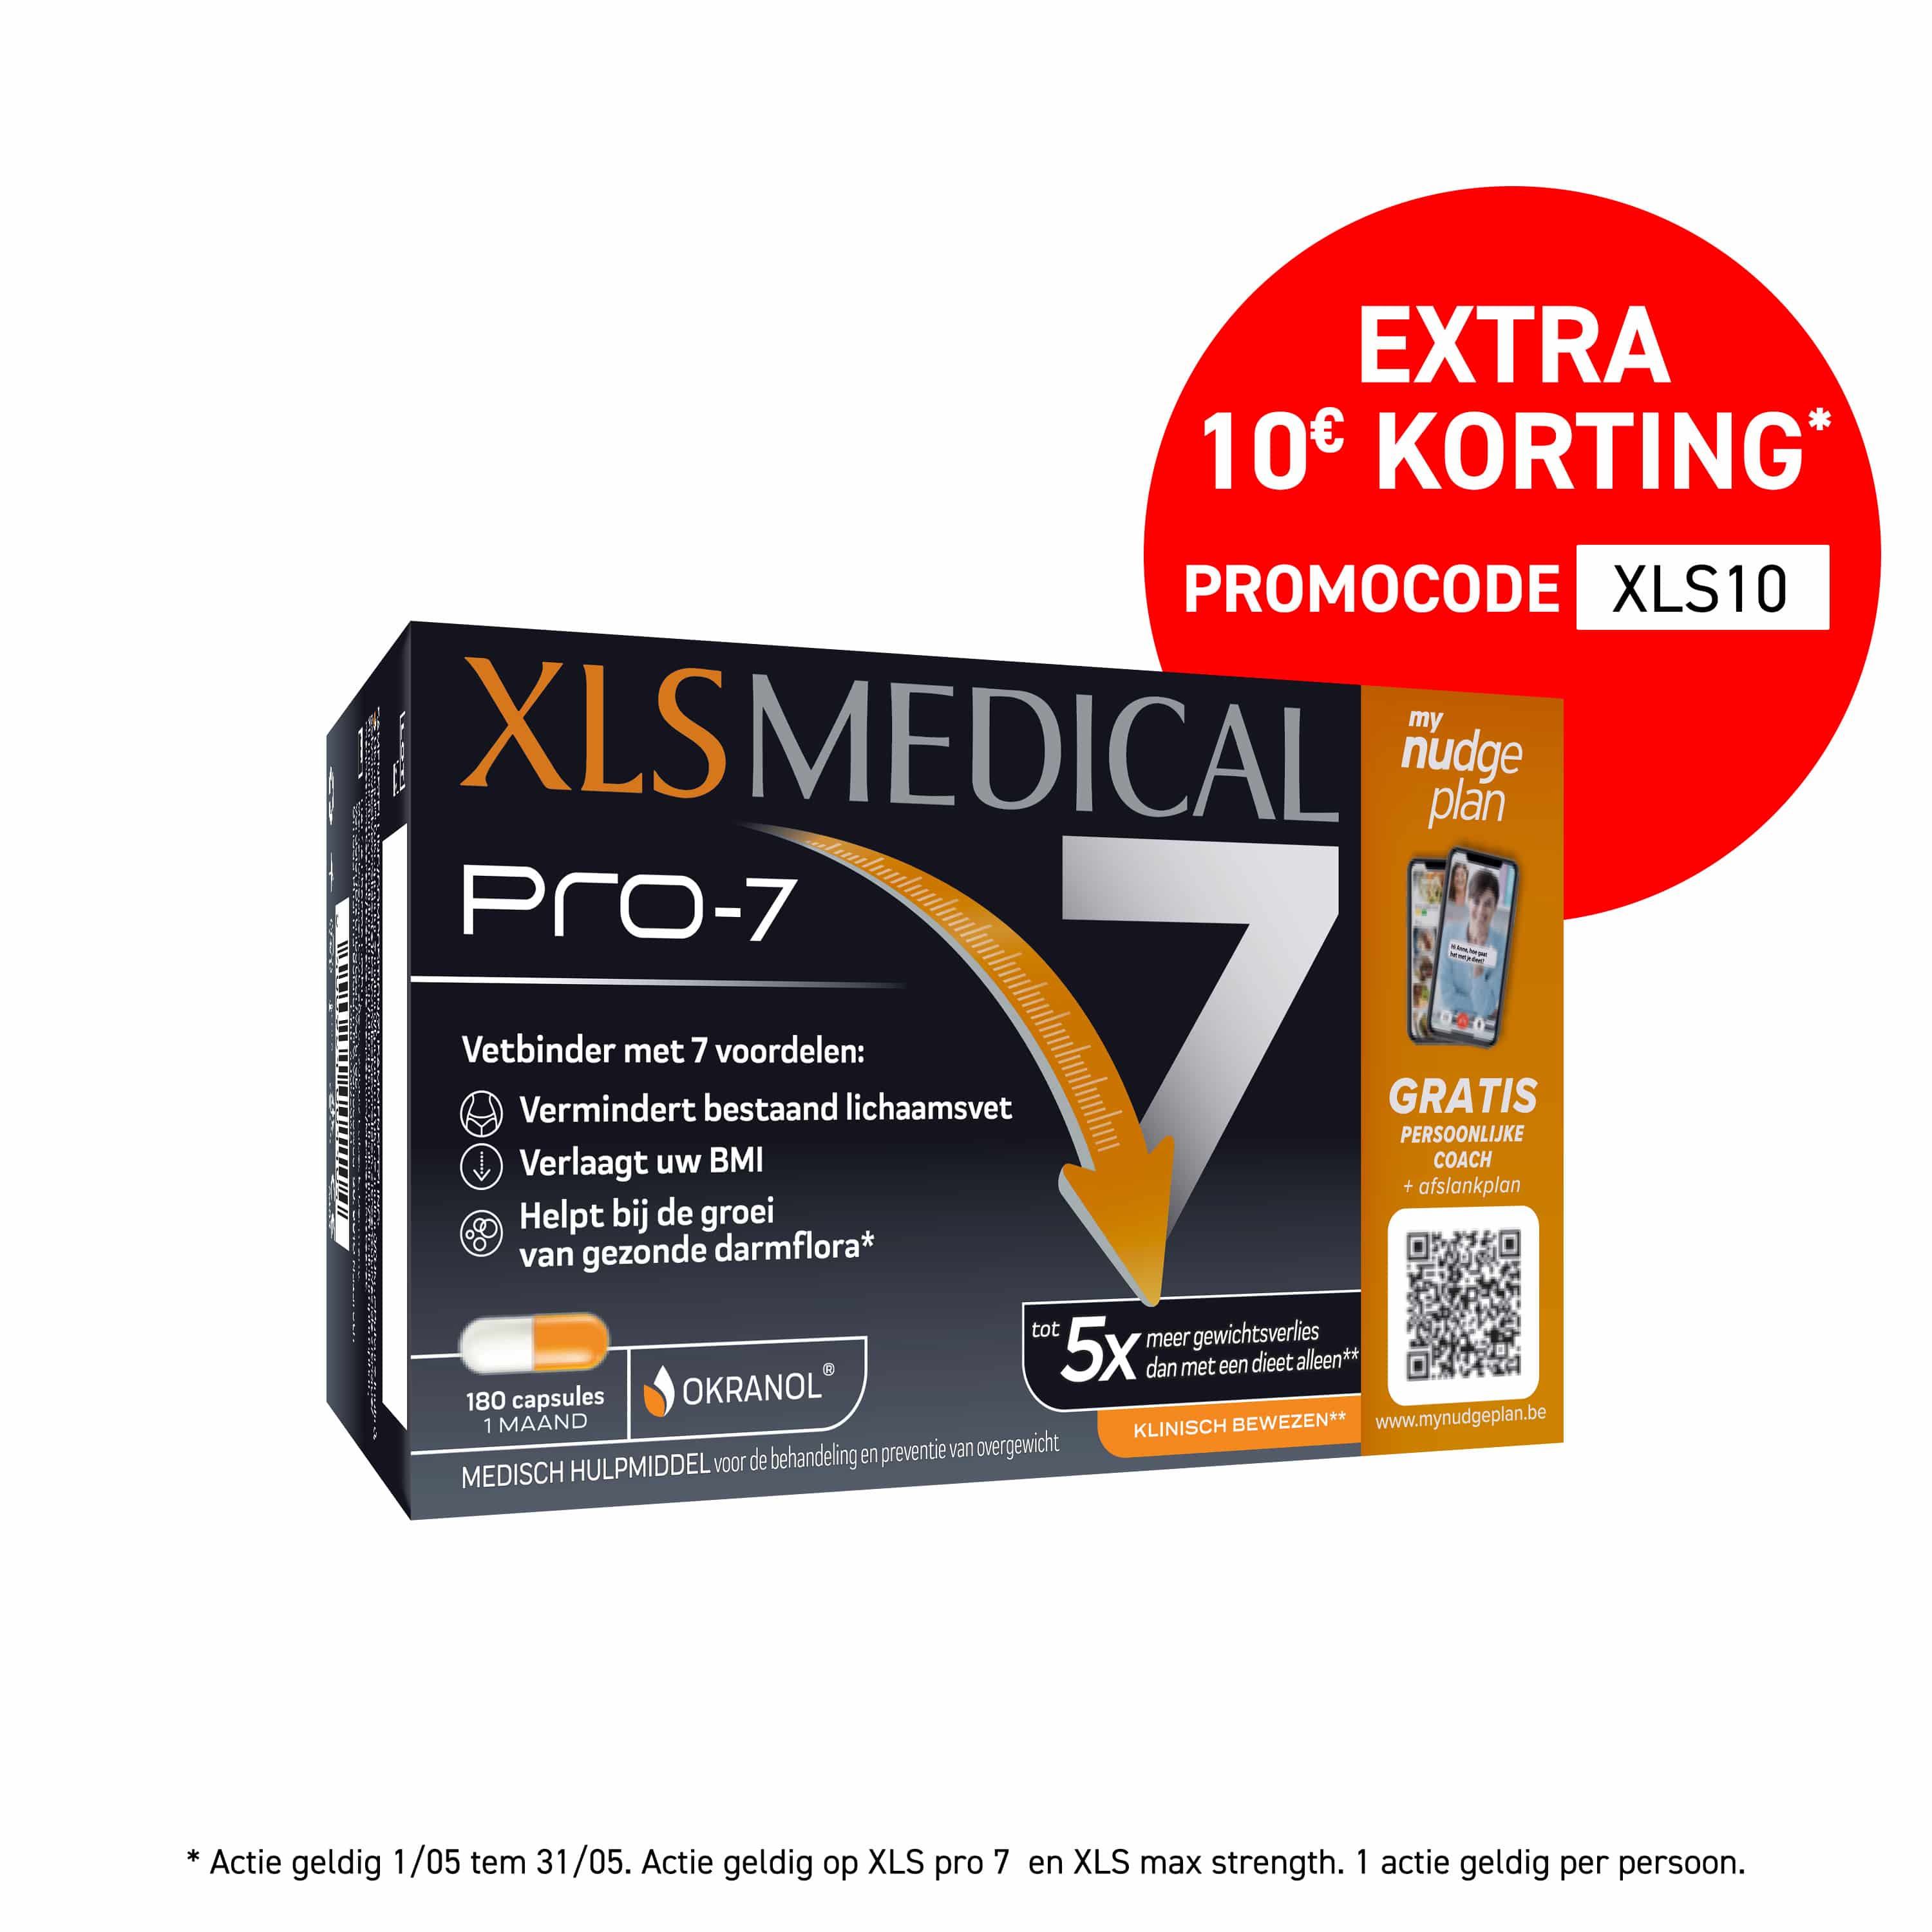 XLS Medical Pro-7 - GRATIS PERSOONLIJKE COACH + Afslankplan 